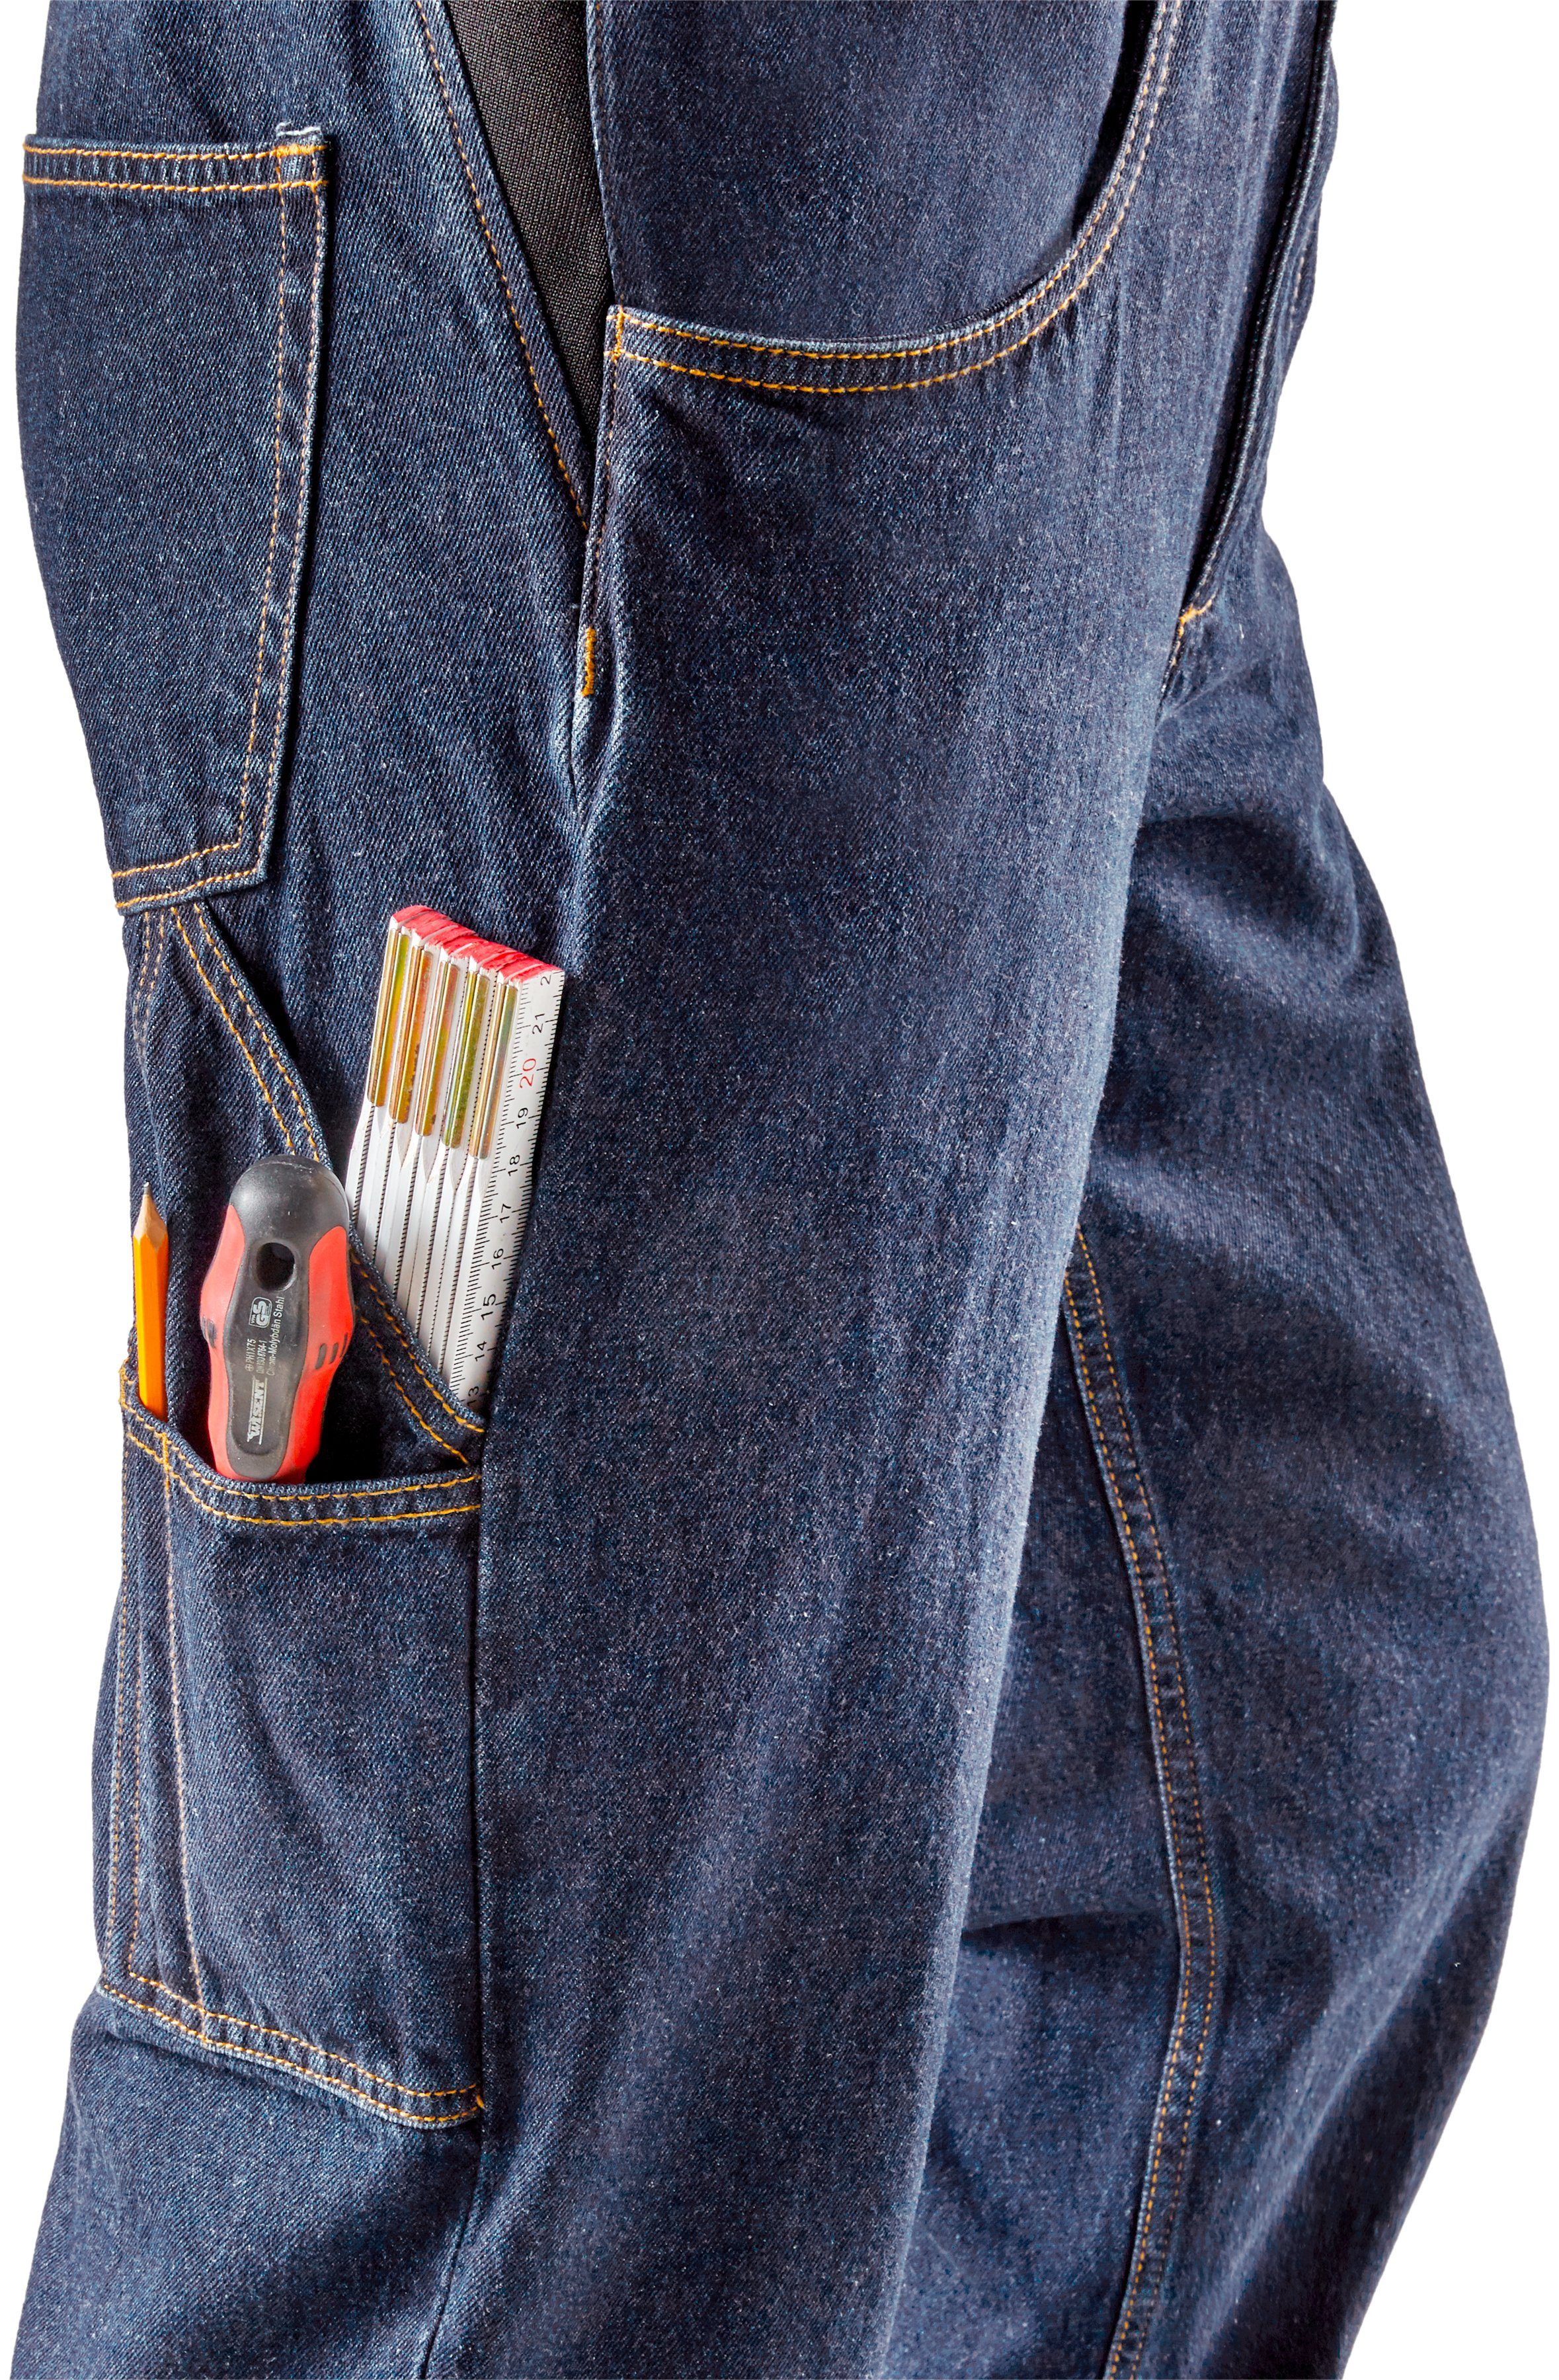 Northern Country Jeans und Taschen, Latzhose Baumwolle, (aus robuster fit) 100% 11 dehnbarem langlebig strapazierfähig Bund, Worker Jeansstoff, mit comfort